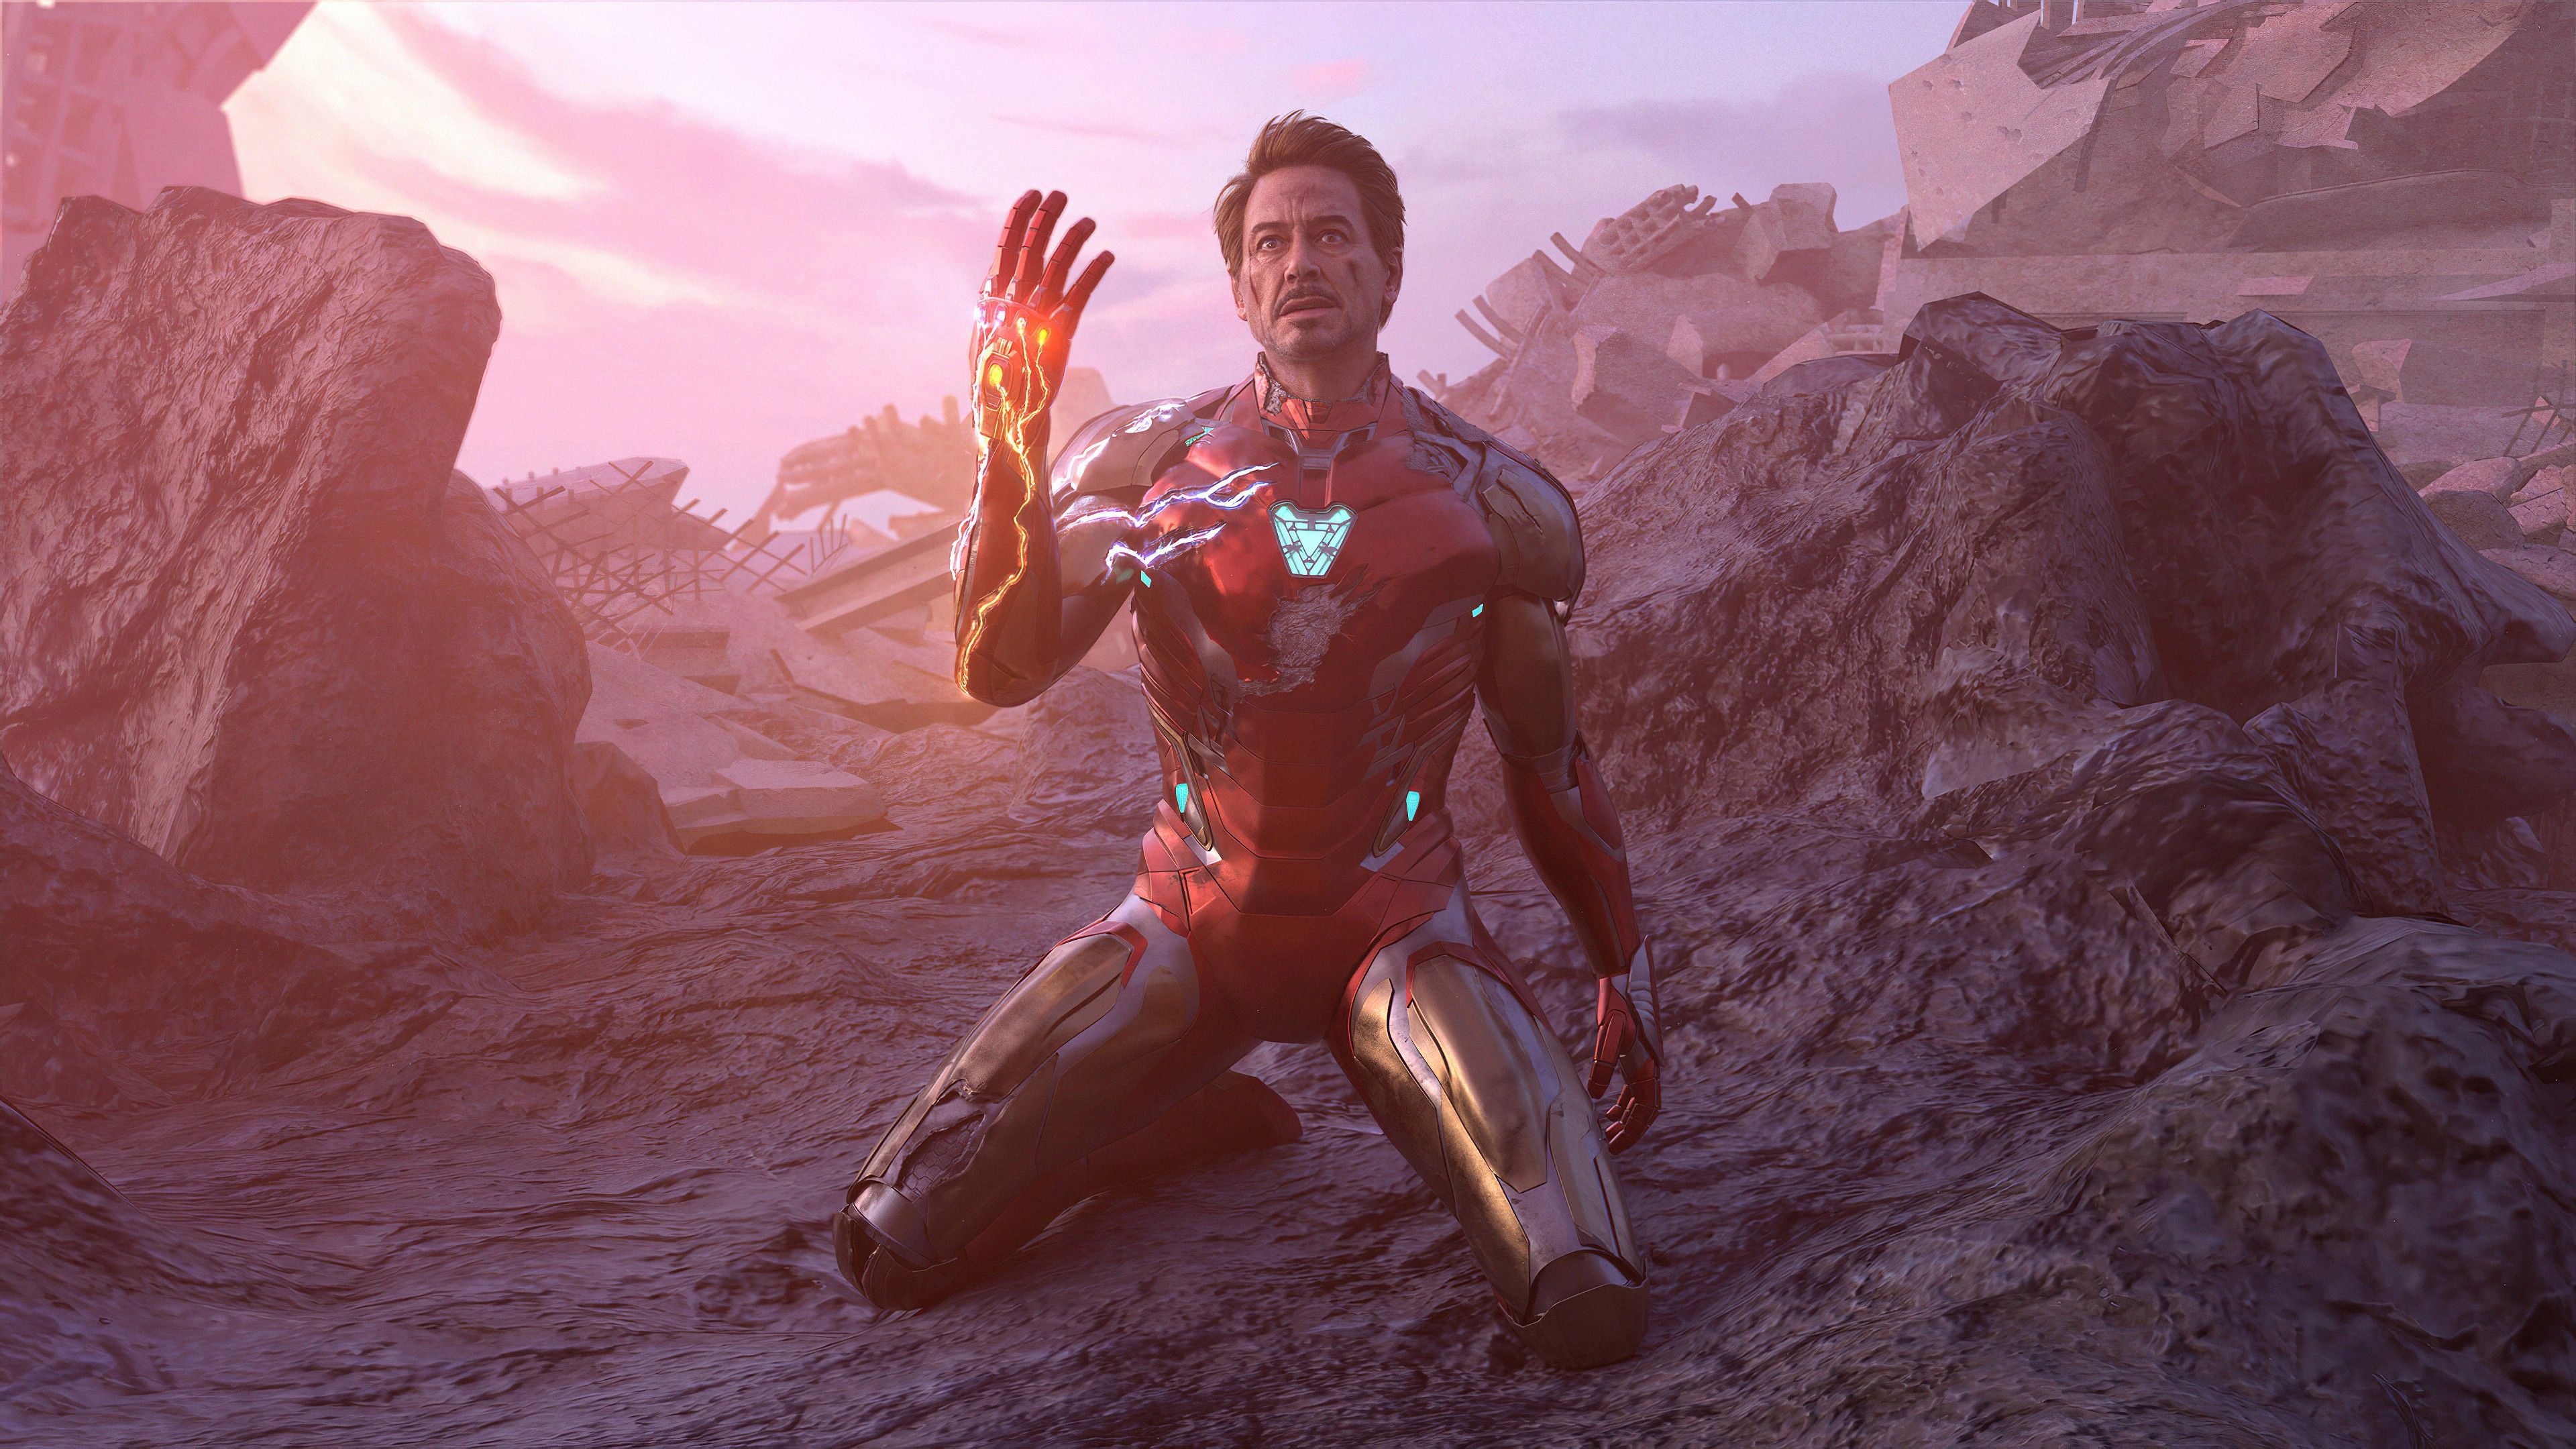 Iron Man Avenger 4K HD Avengers Endgame Wallpaper